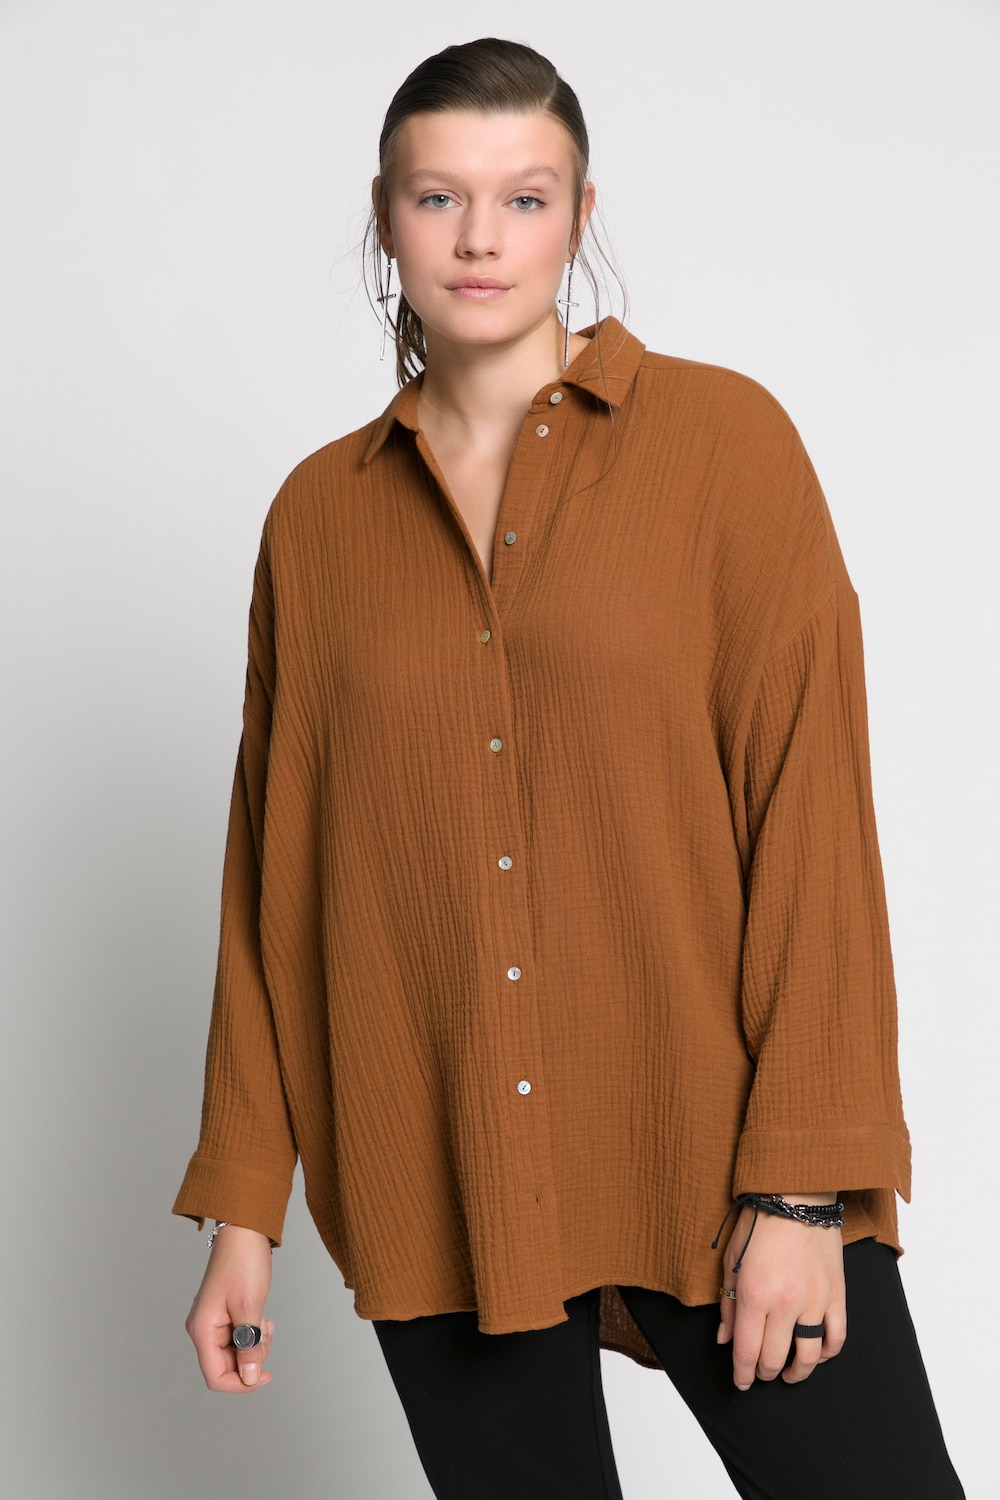 Plus Size Cotton Muslin Blouse, Woman, brown, size: 16/18, cotton, Studio Untold